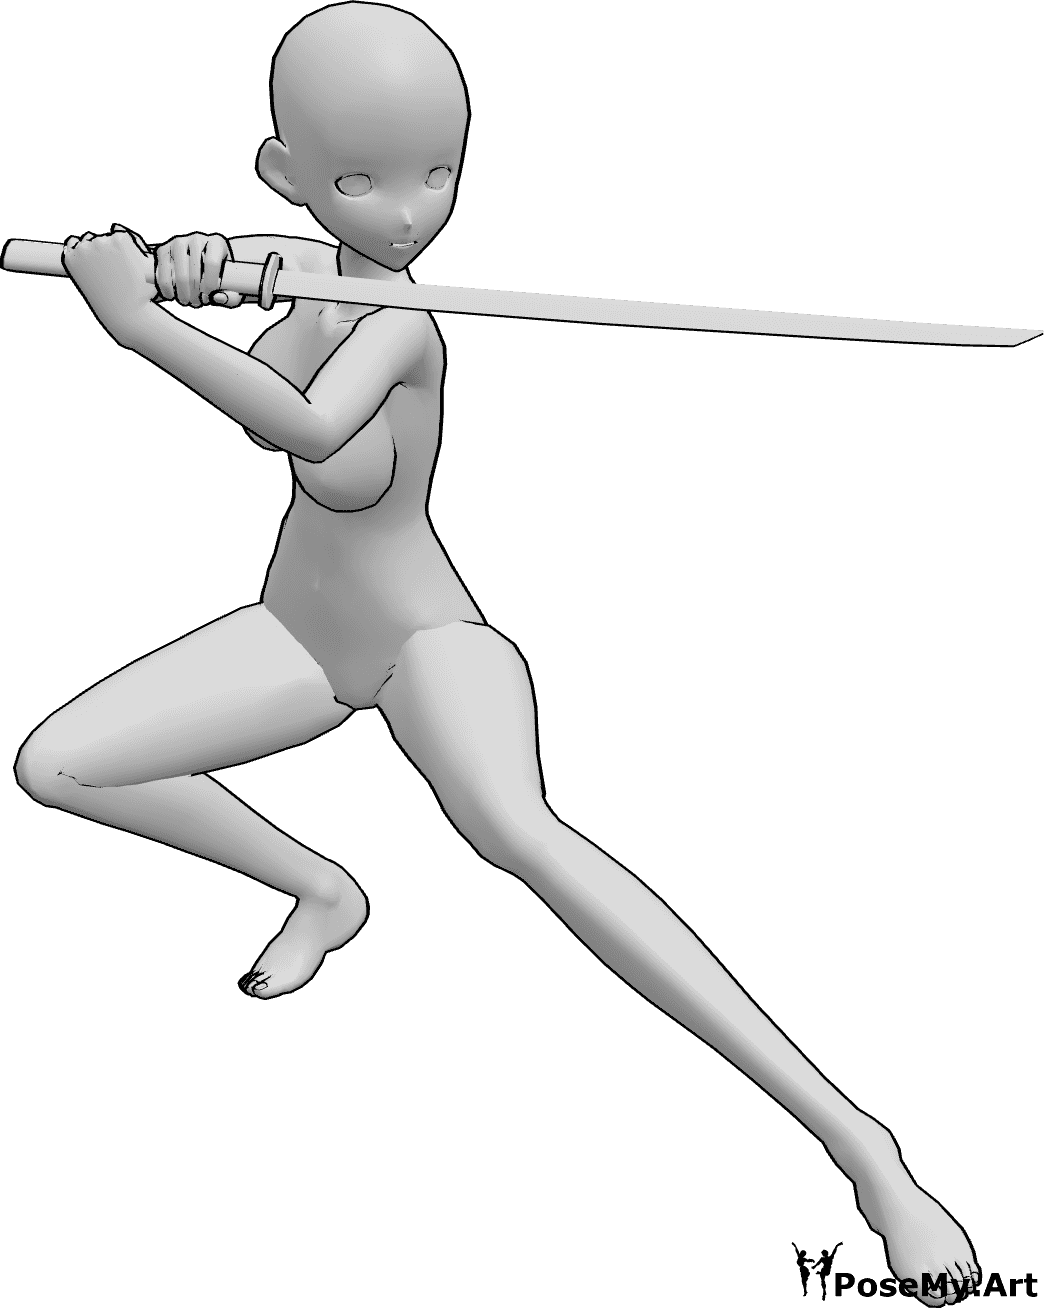 Posen-Referenz- Anime weibliche Ninja Pose - Anime-Frau hält das Katana mit beiden Händen, schaut nach links, bereit zu kämpfen